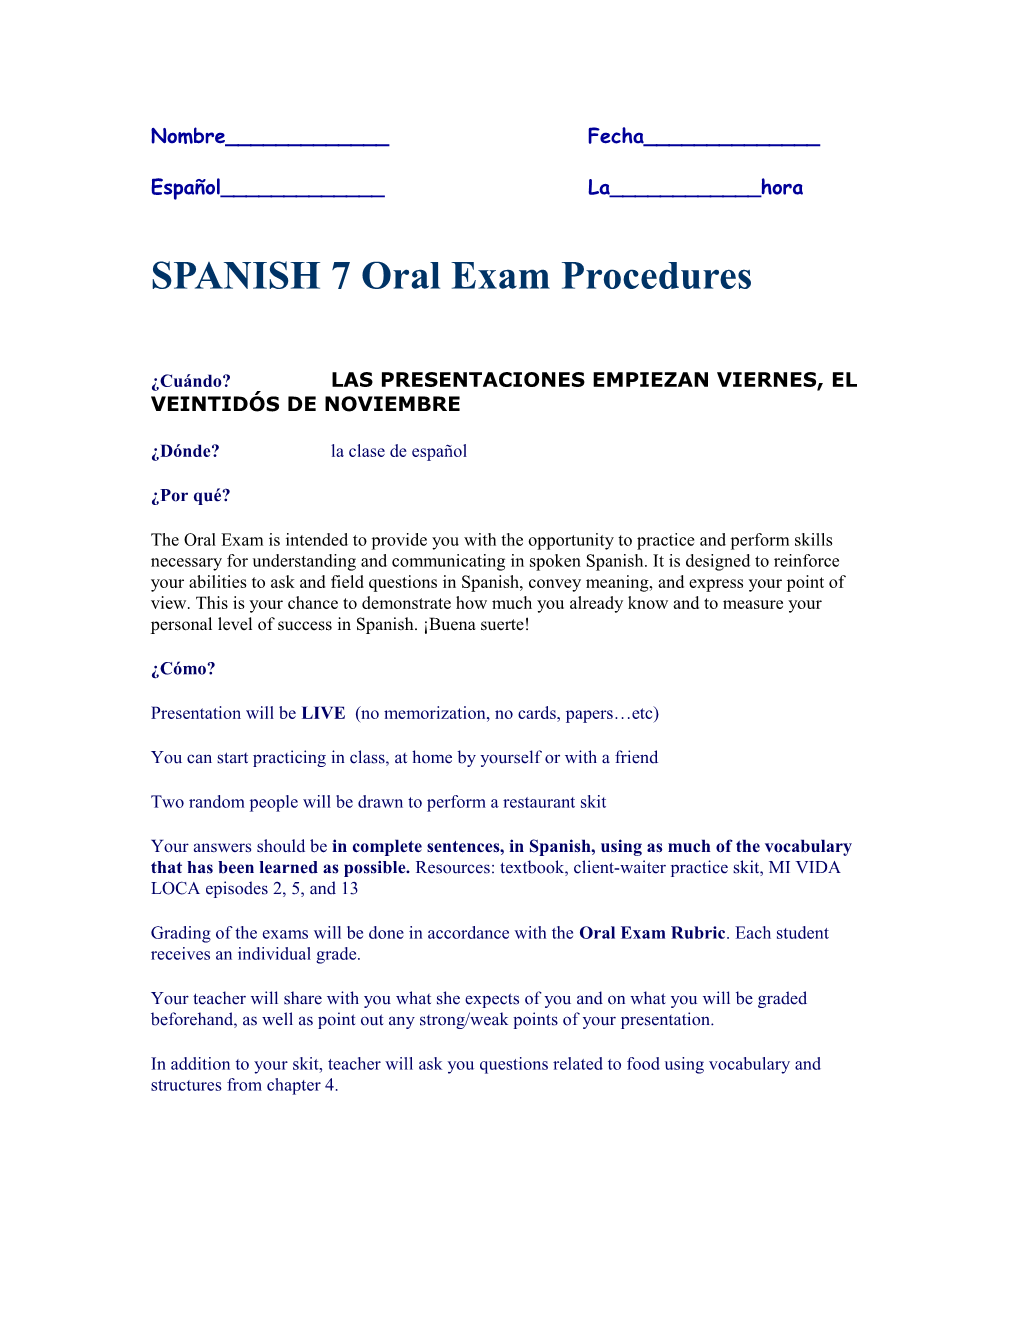 SPANISH 7 Oral Exam Procedures